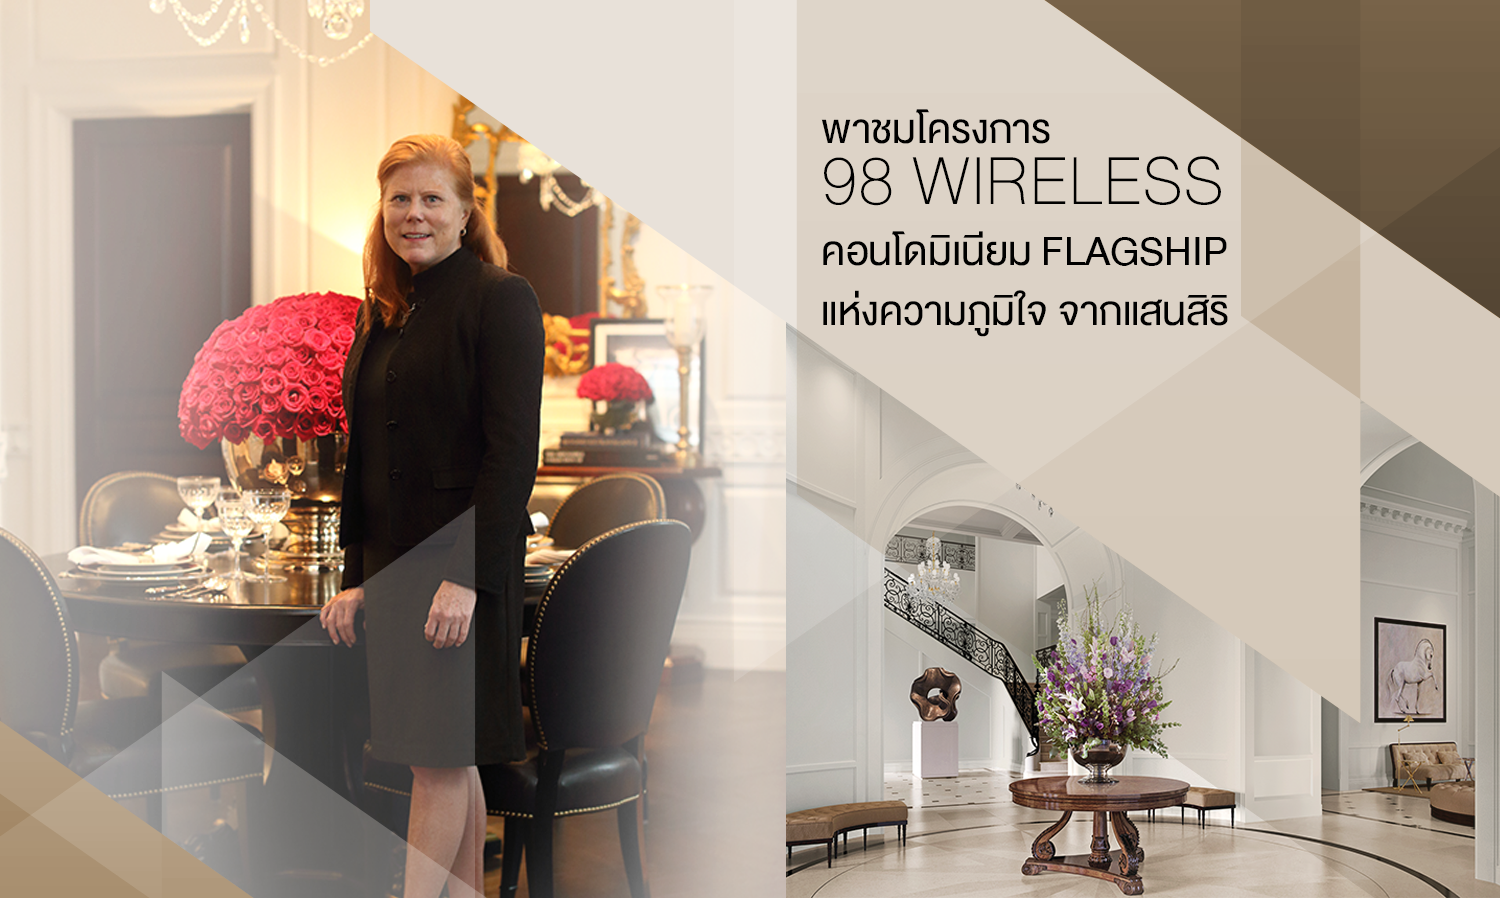 พาชมโครงการ 98 Wireless คอนโดมิเนียม flagship แห่งความภูมิใจจากแสนสิริ